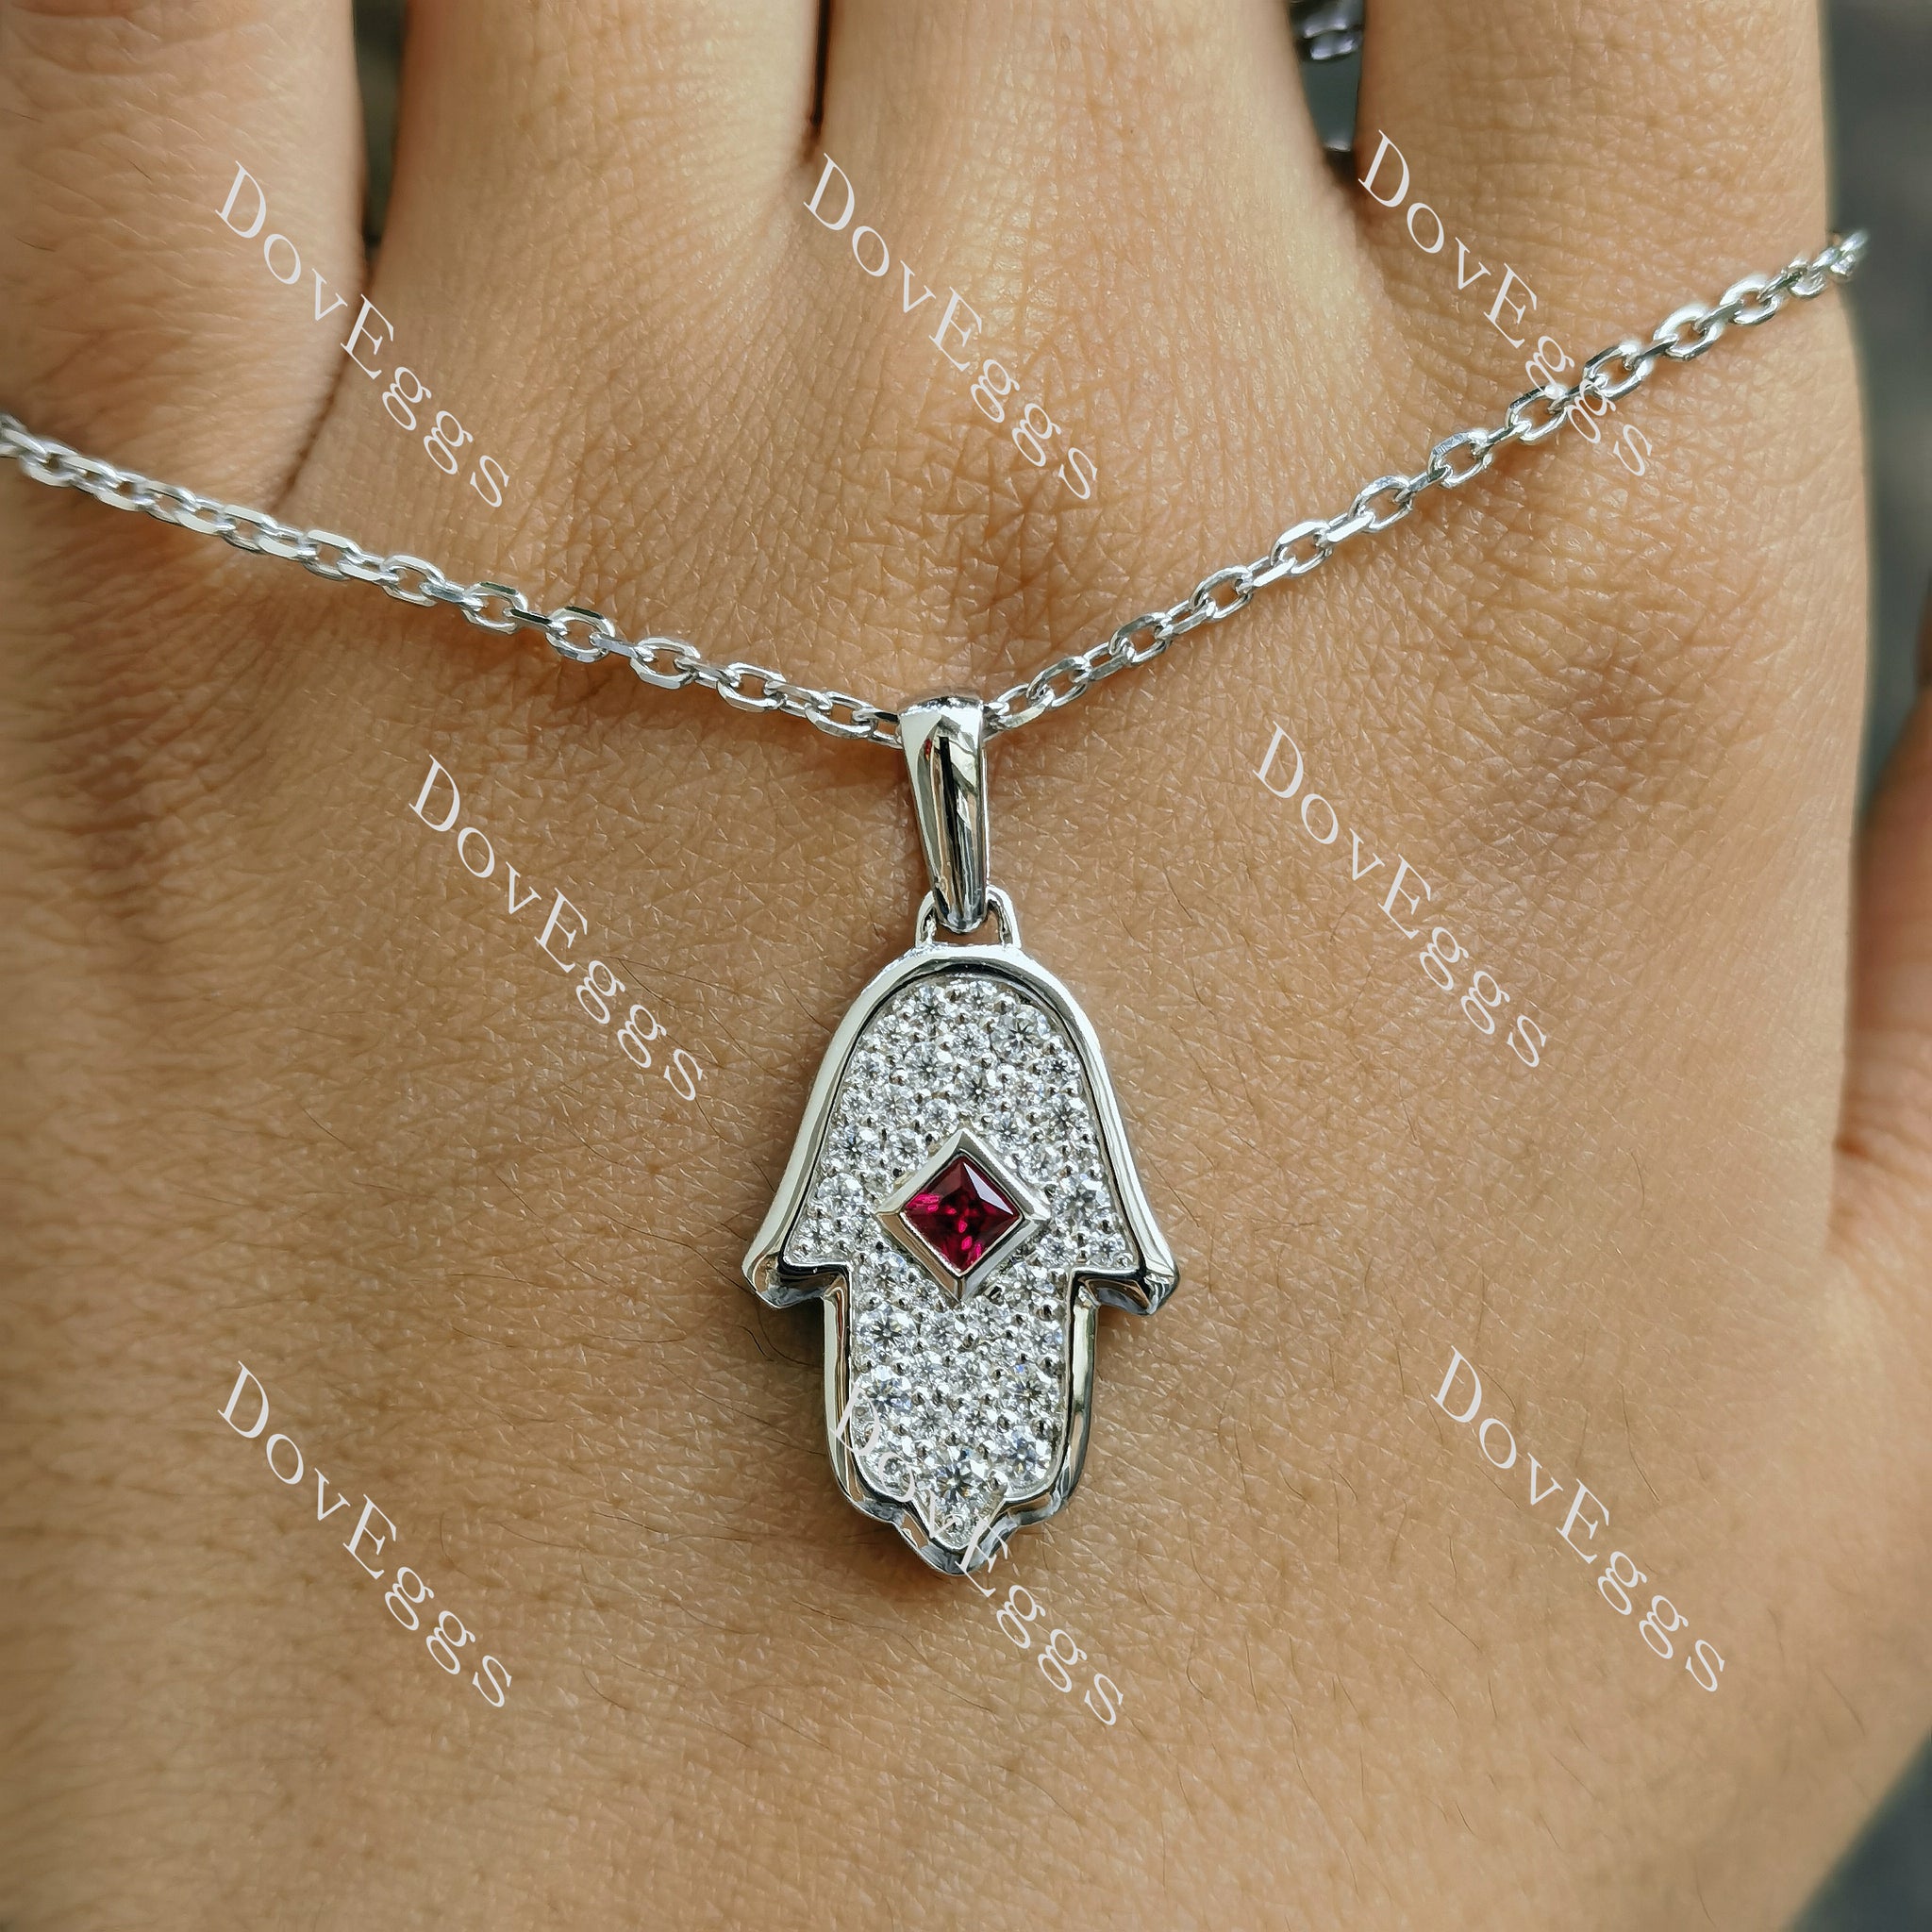 Doveggs princess colored gem pendant necklace (pendant only)